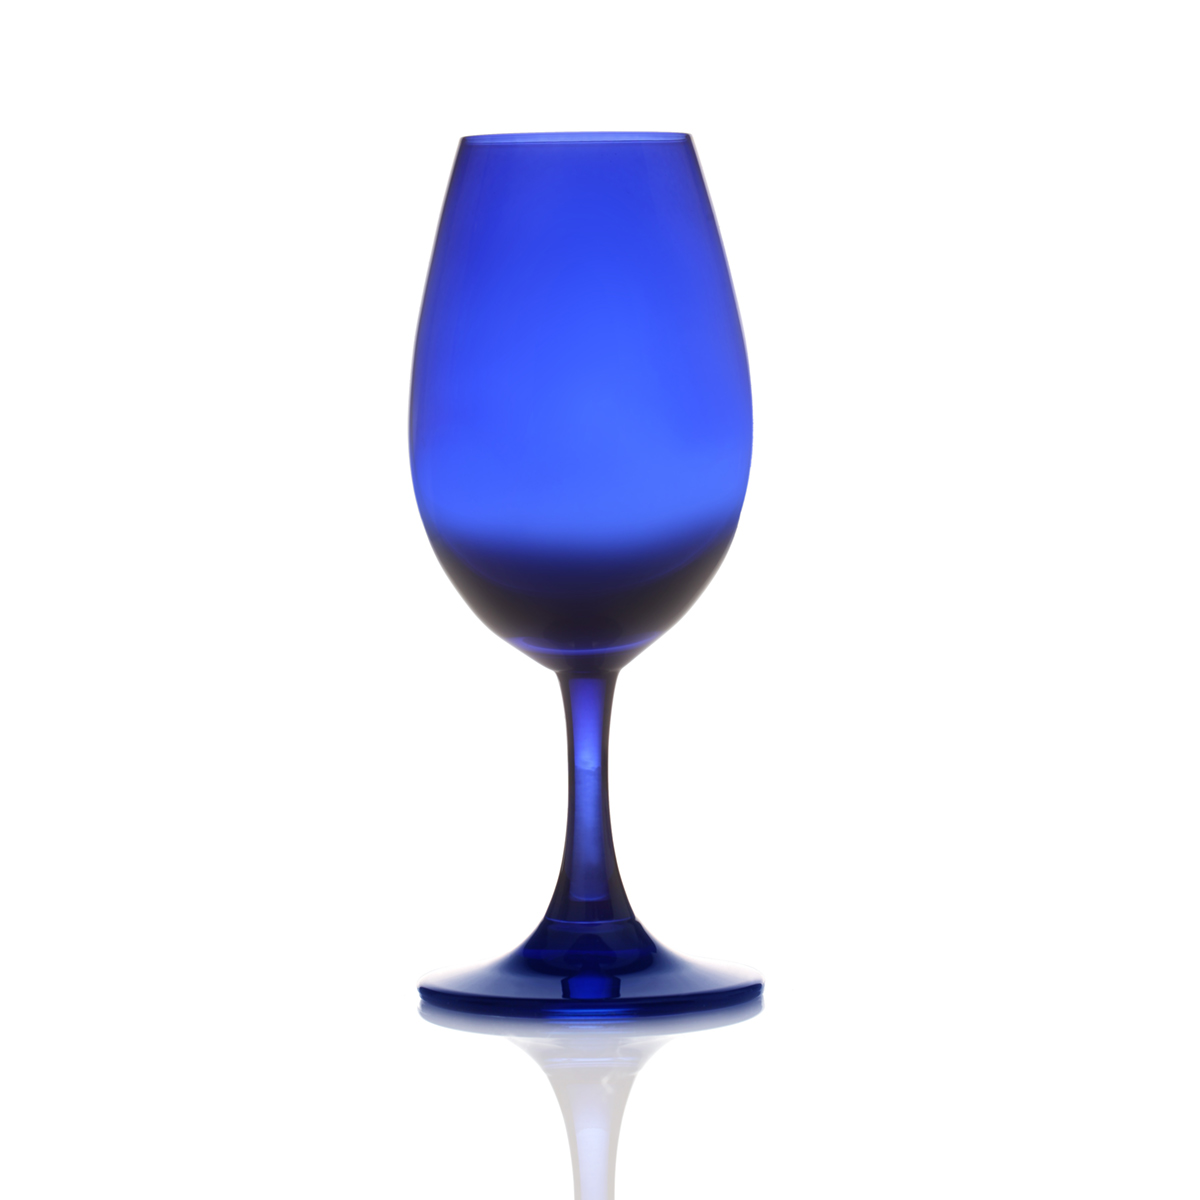 Glencairn Whisky Nosing Copita aus Schottland - in Blau - ideal für Blind Tasting